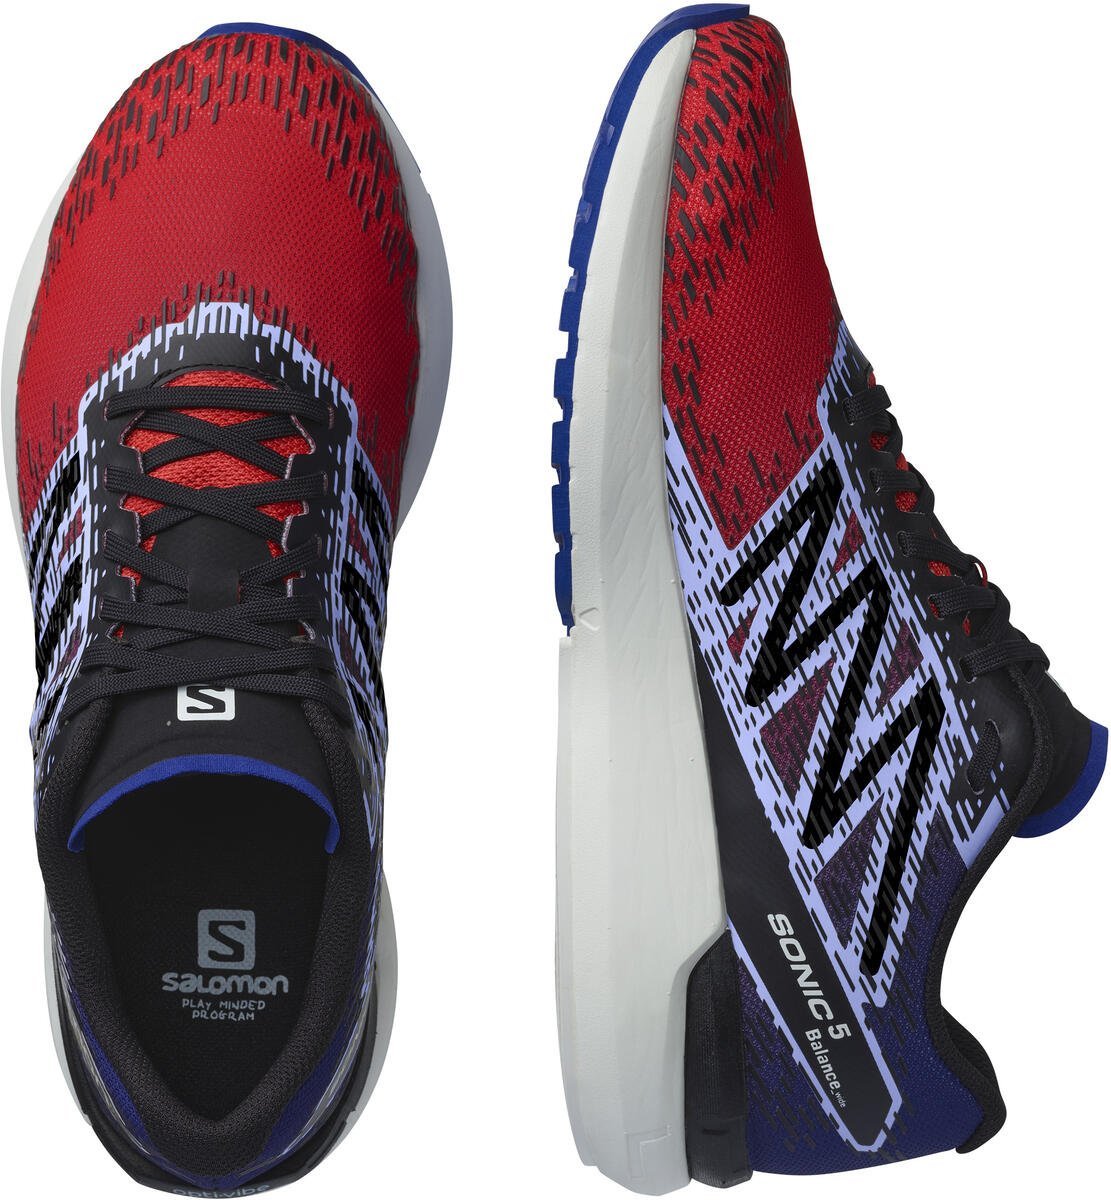 Topánky Salomon SONIC 5 Balance M - červená/modrá